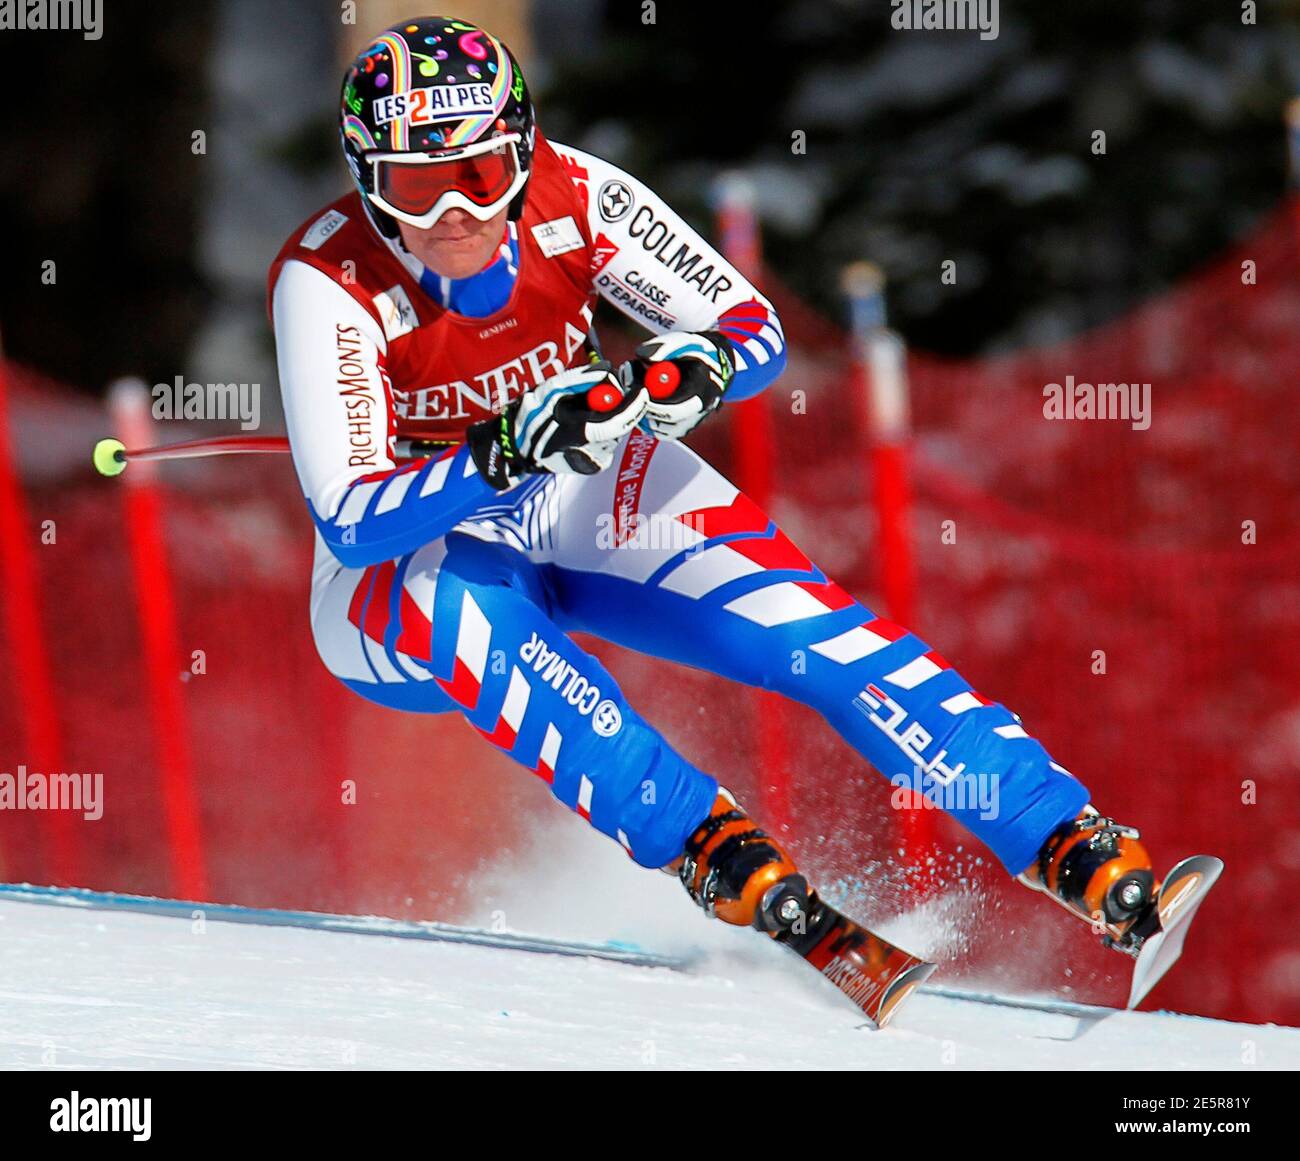 Marion Rolland di Francia fa una svolta durante la gara di sci alpino della Coppa del mondo delle Donne sul lago Louise, Alberta 2 dicembre 2011. REUTERS/Mike Blake (CANADA - TAG: SCI DI SPORT) Foto Stock